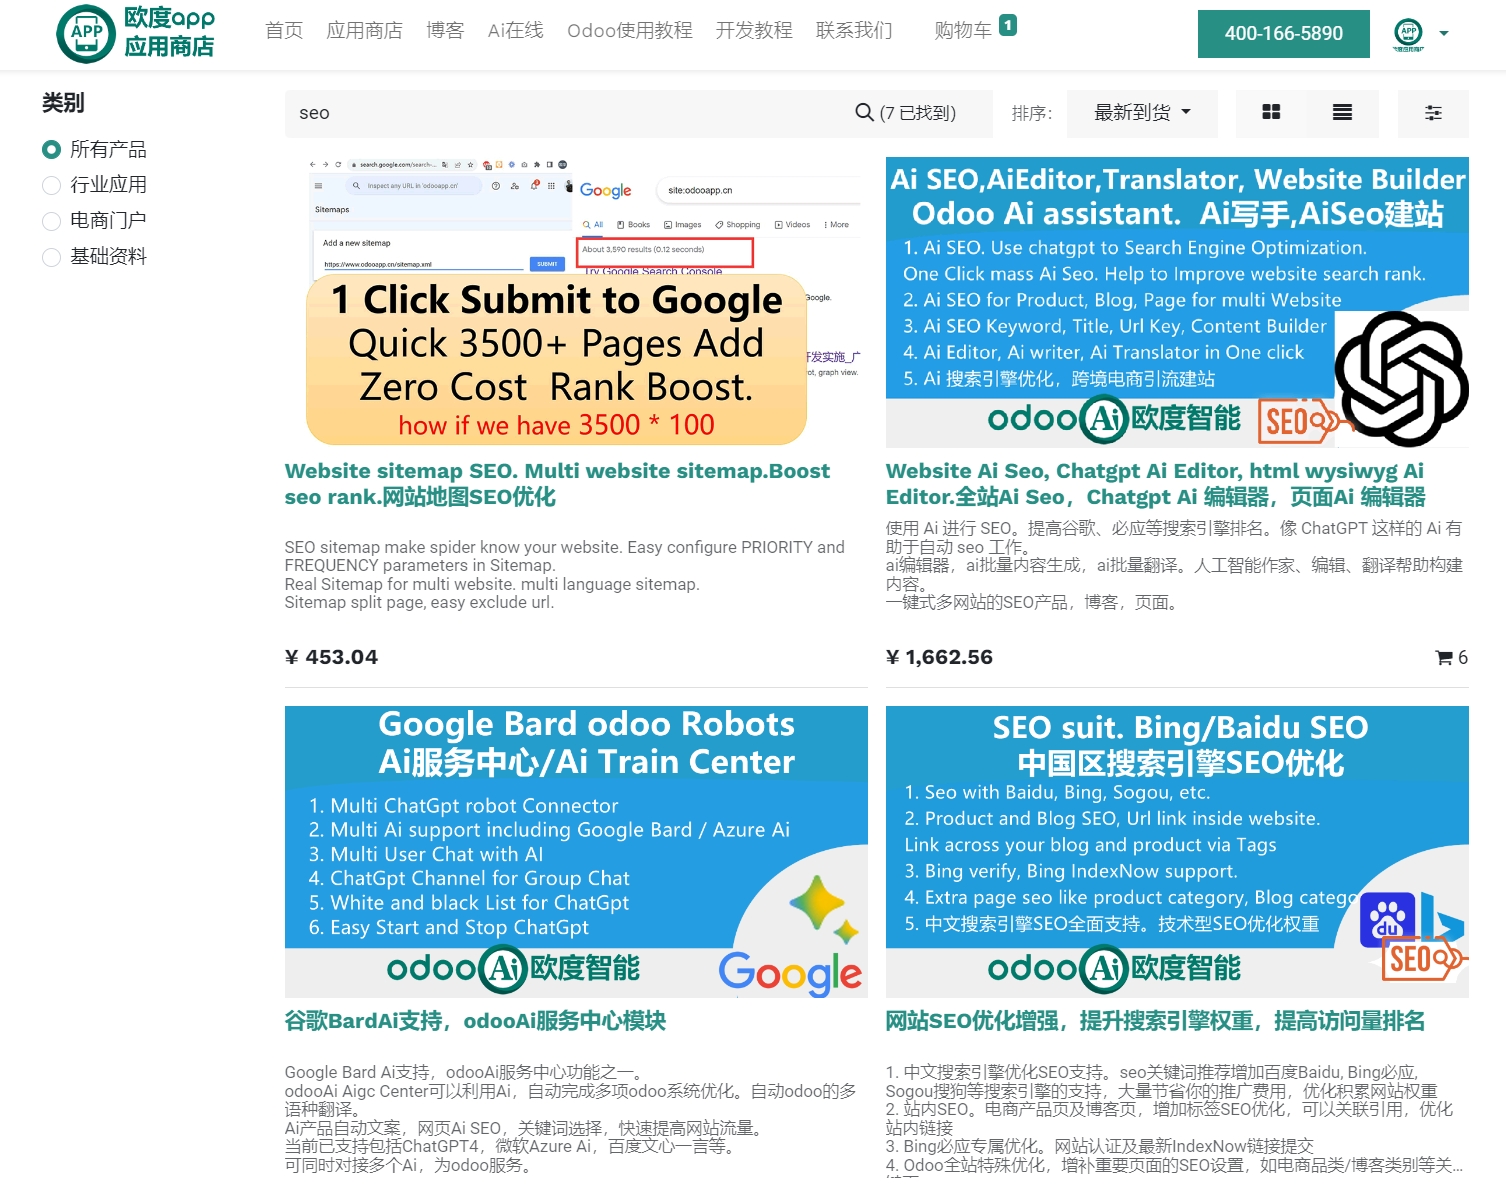 
欧度智能的中国专用SEO模块已全面上架，官方市场及中文商店均可找到